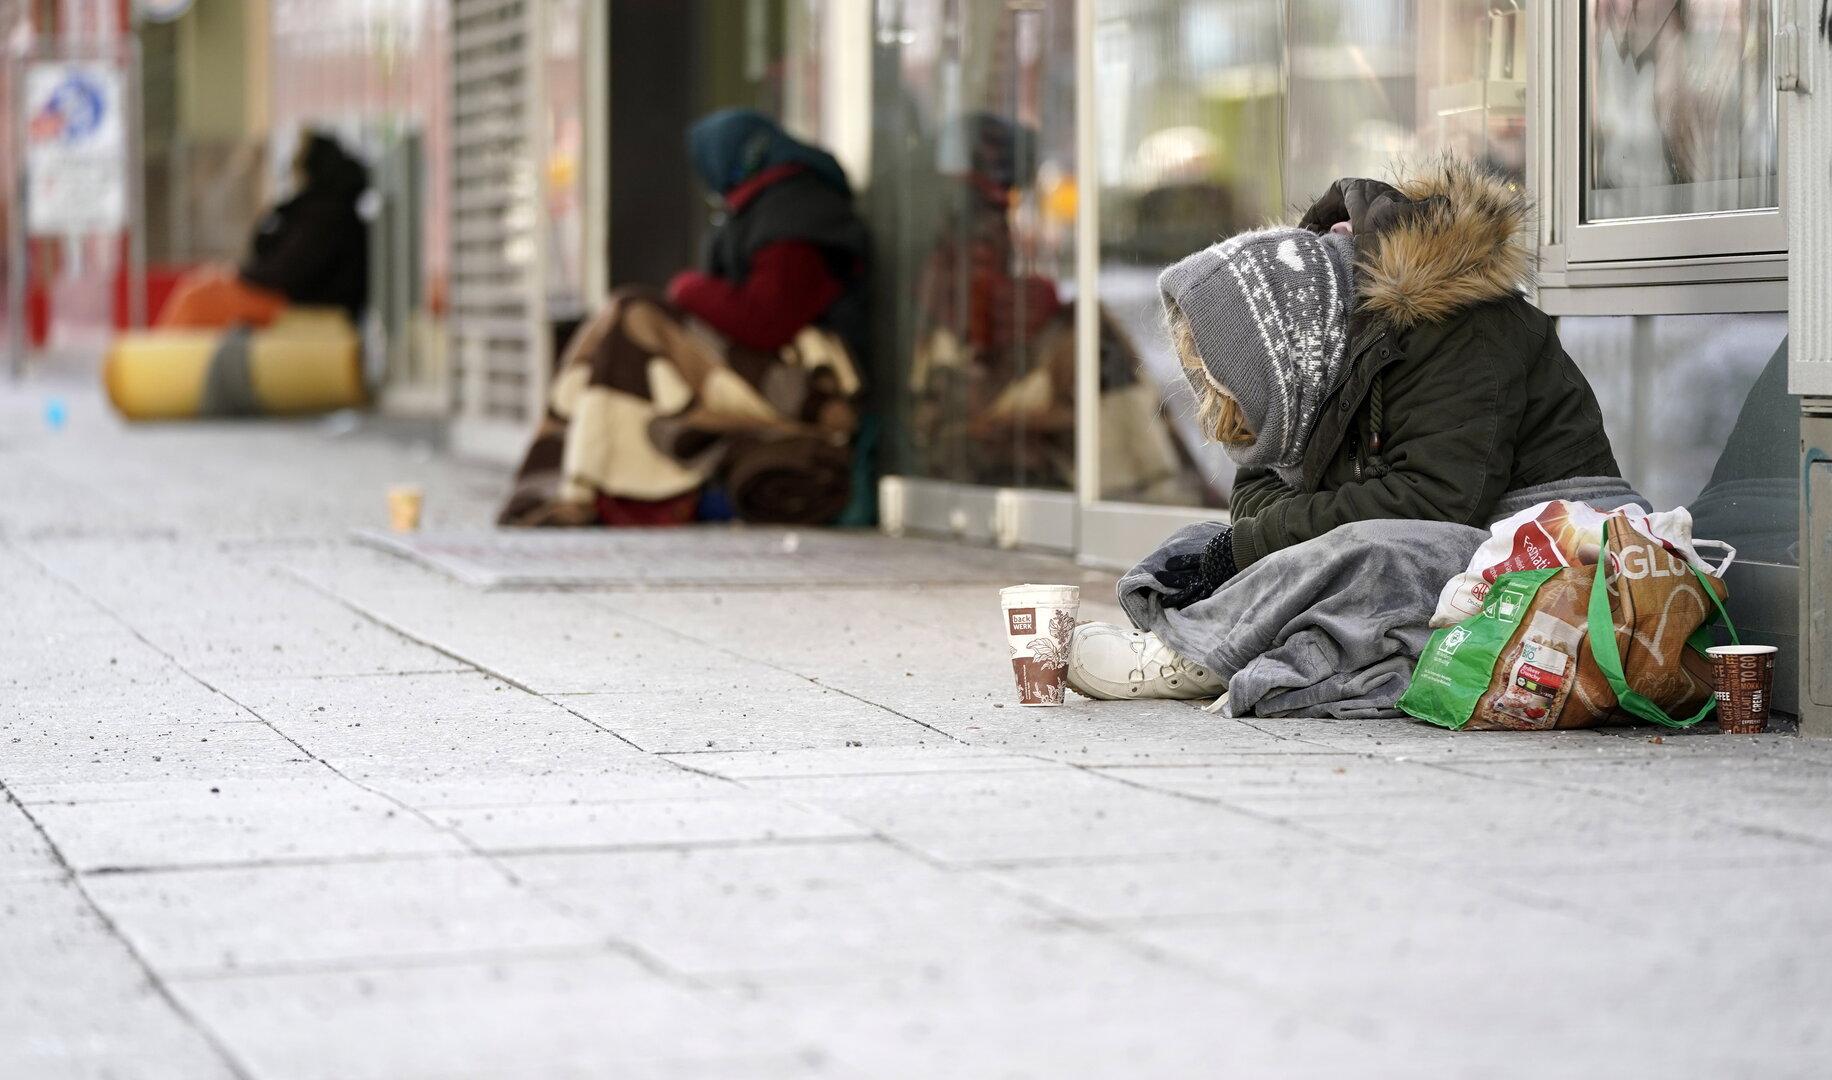 Obdachlosigkeit in Östrerreich: Wer auf unseren Straßen lebt